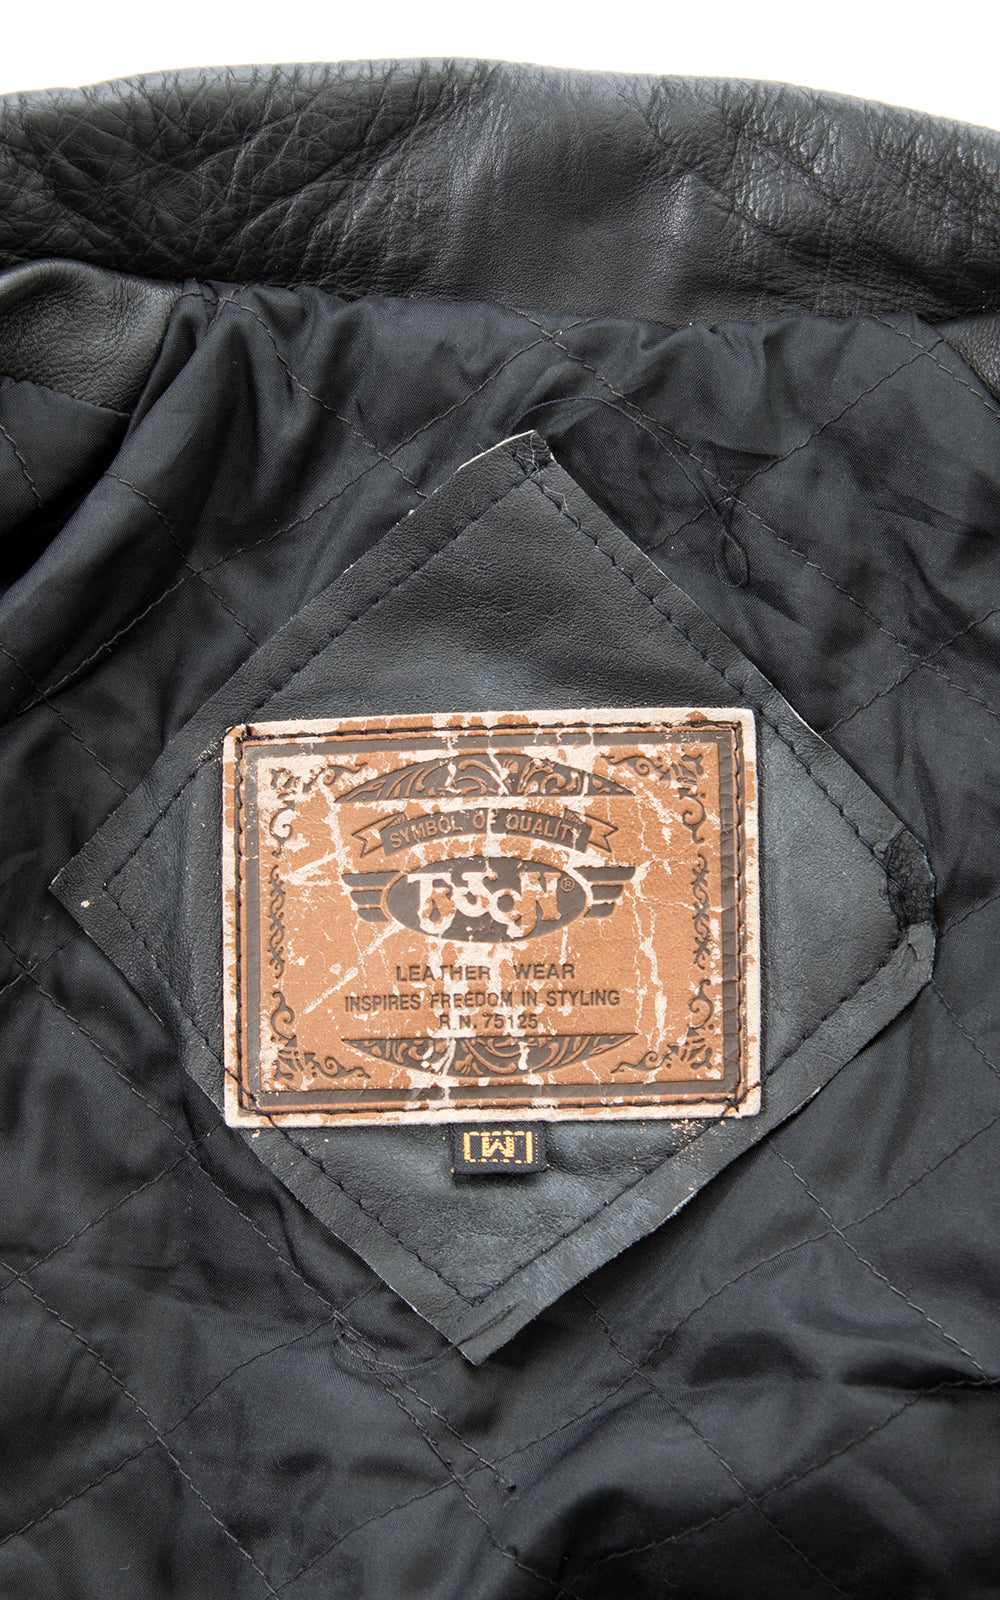 1980s Black Leather Cropped Moto Jacket BirthdayLifeVintage